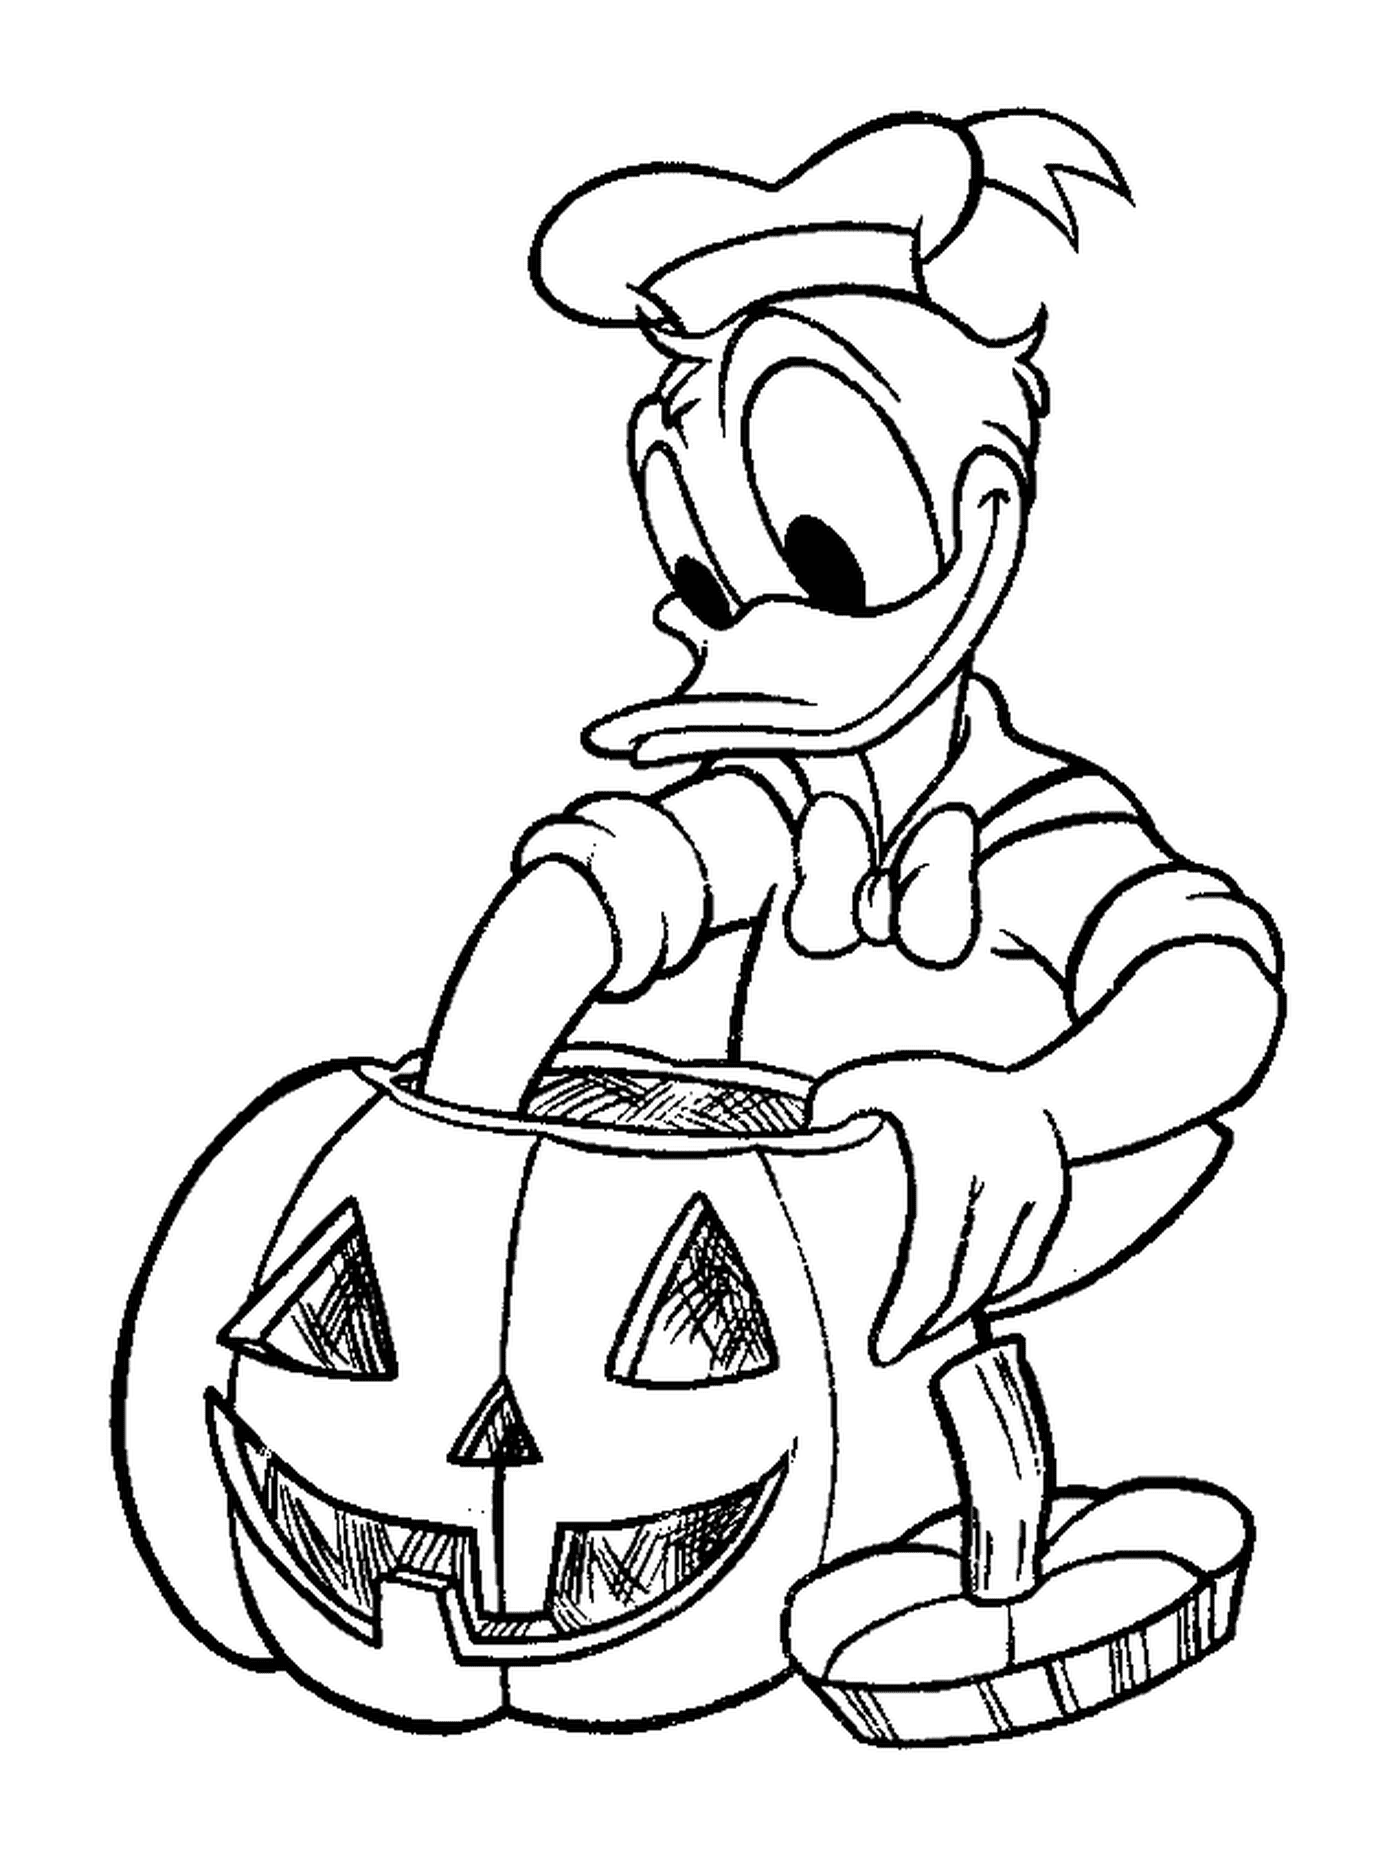  Donald macht seinen Kürbis für Halloween 